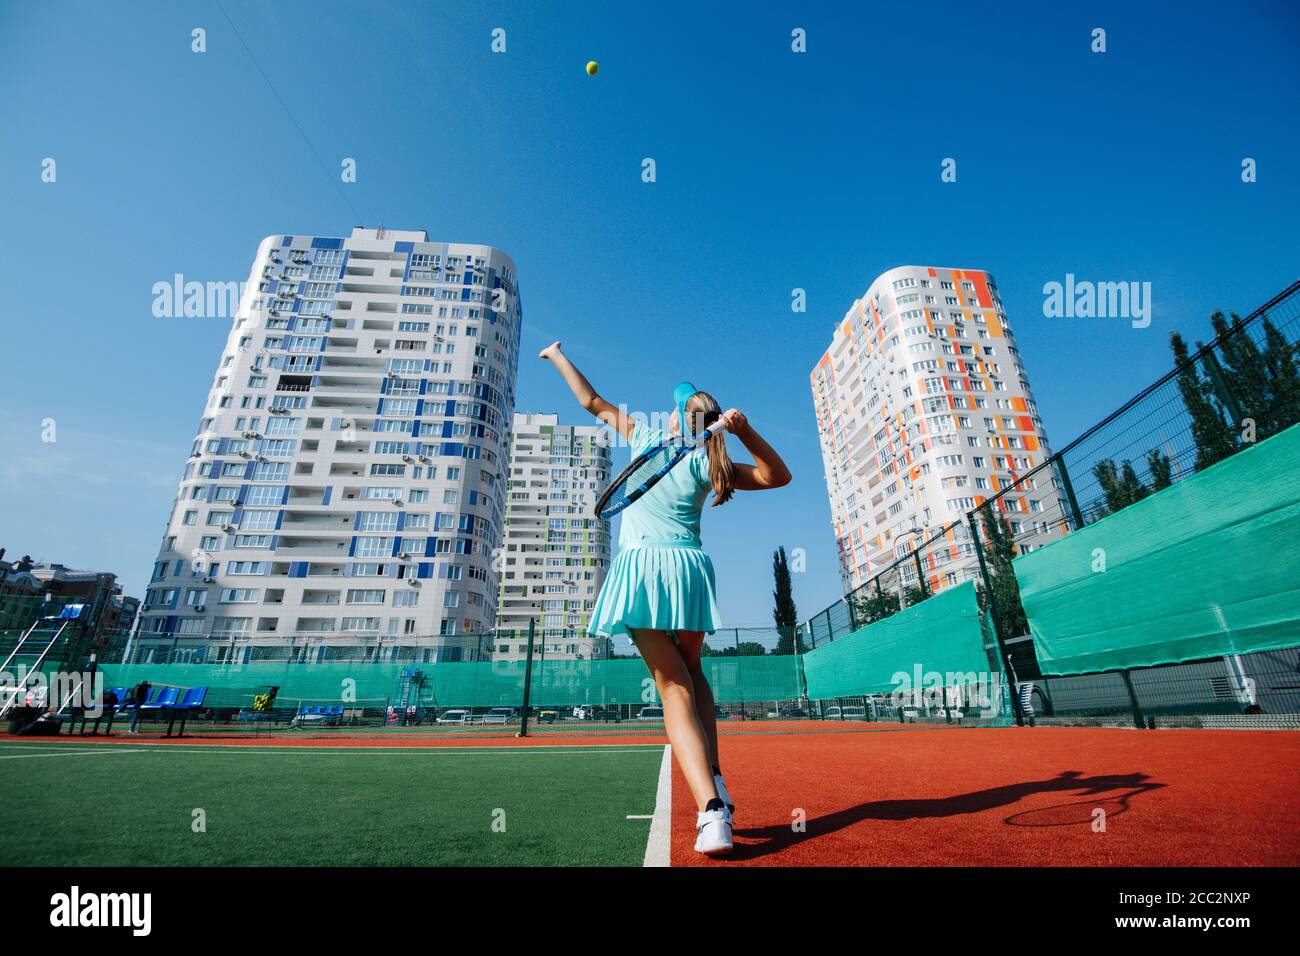 Adolescente ragazza formazione su un nuovo campo da tennis sotto a. bel cielo blu chiaro Foto Stock